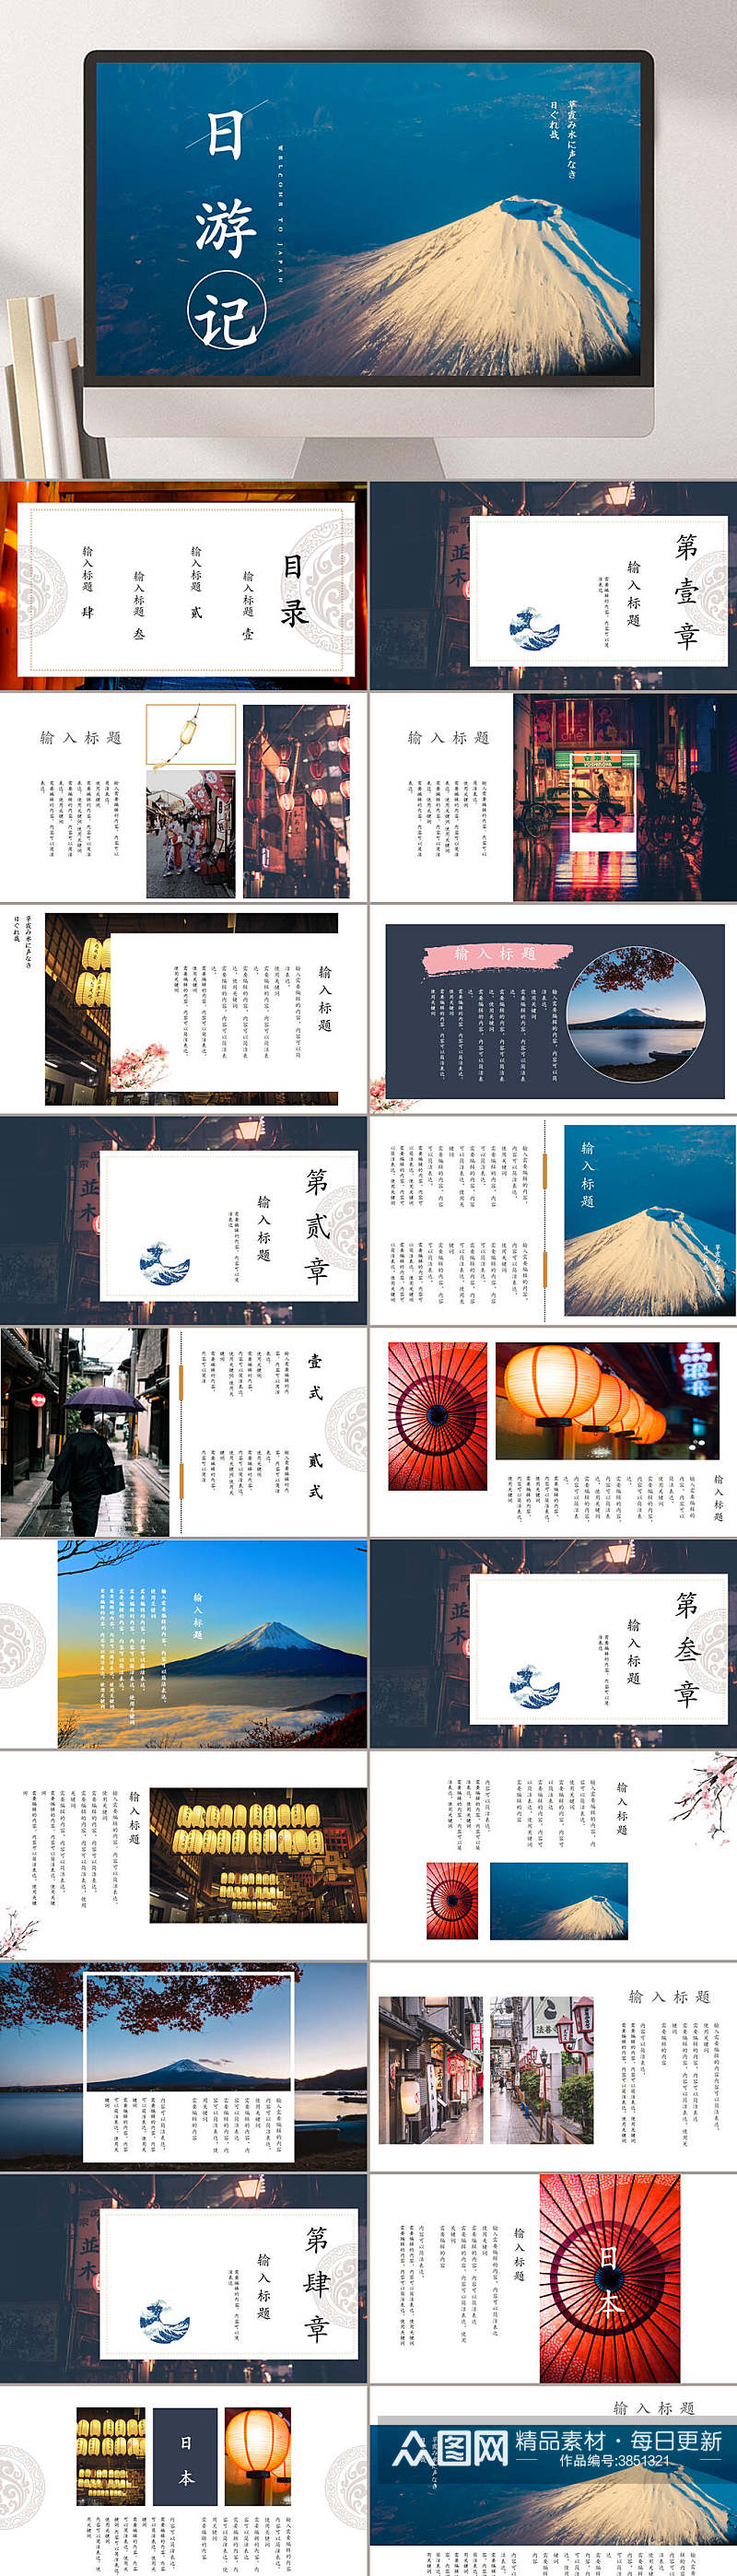 日本游记富士山实景封面旅游相册PPT素材